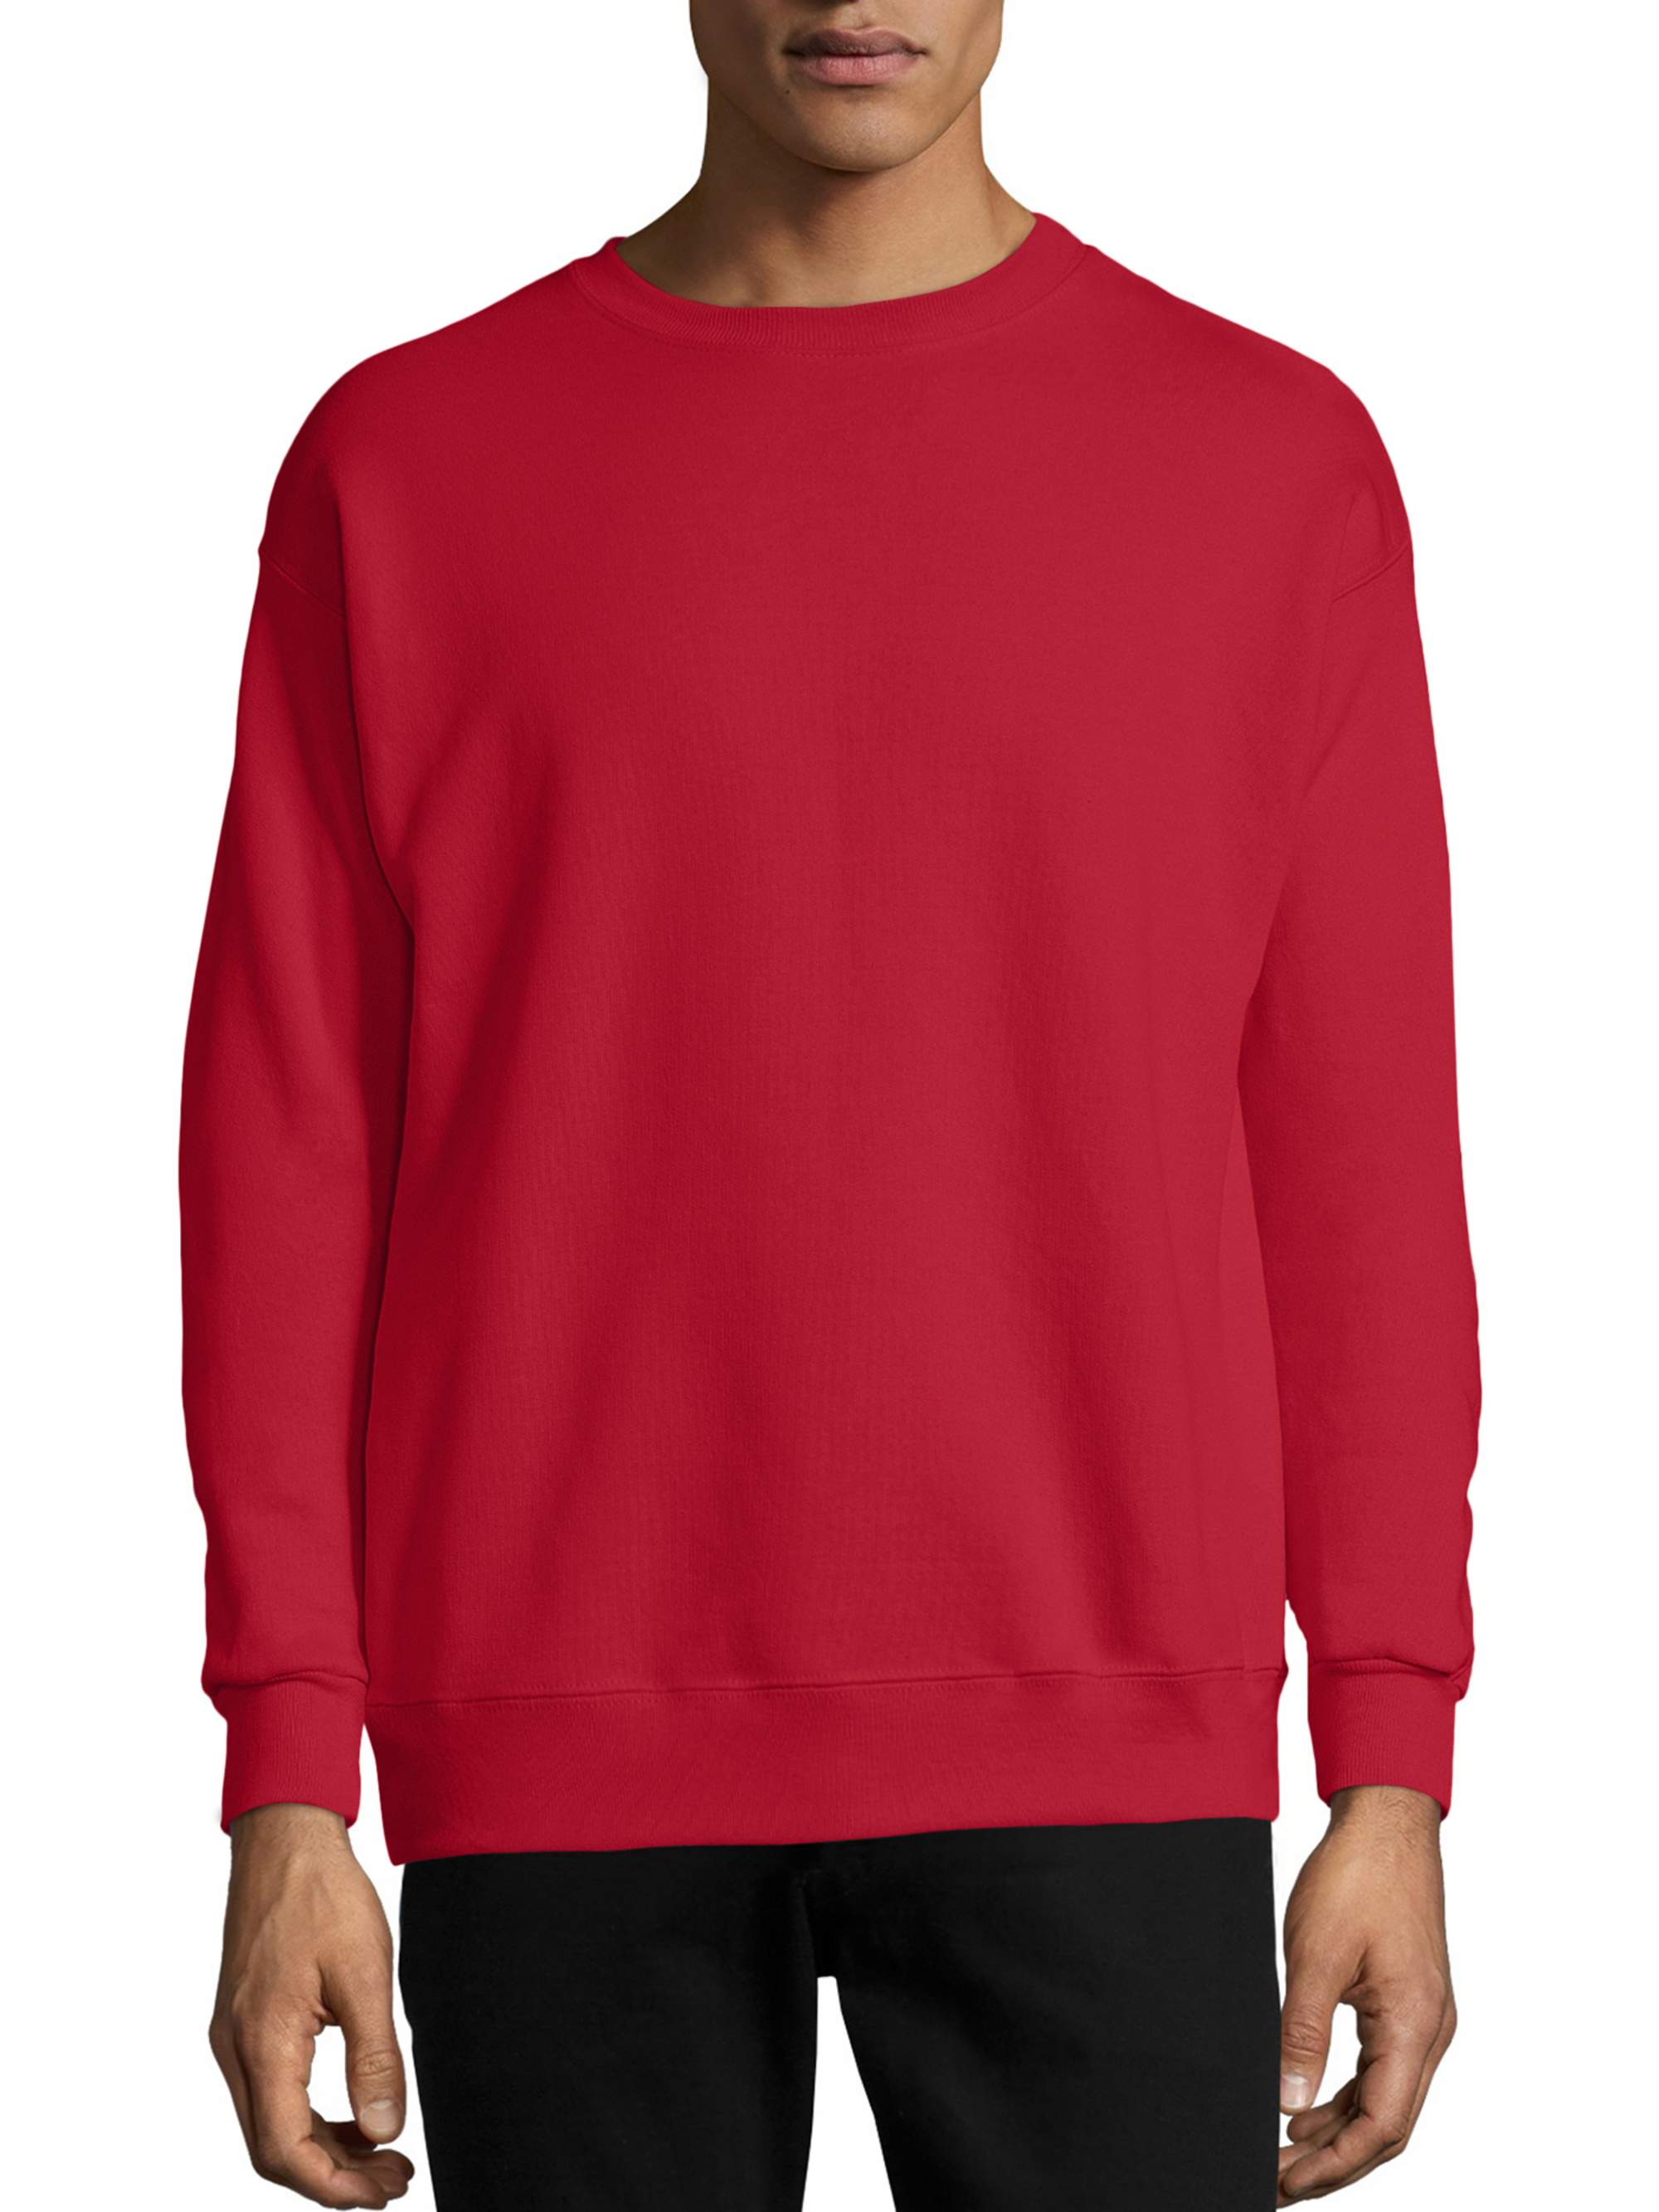 Hanes Men's and Big Men's Ecosmart Fleece Sweatshirt, up to Size 5XL ...